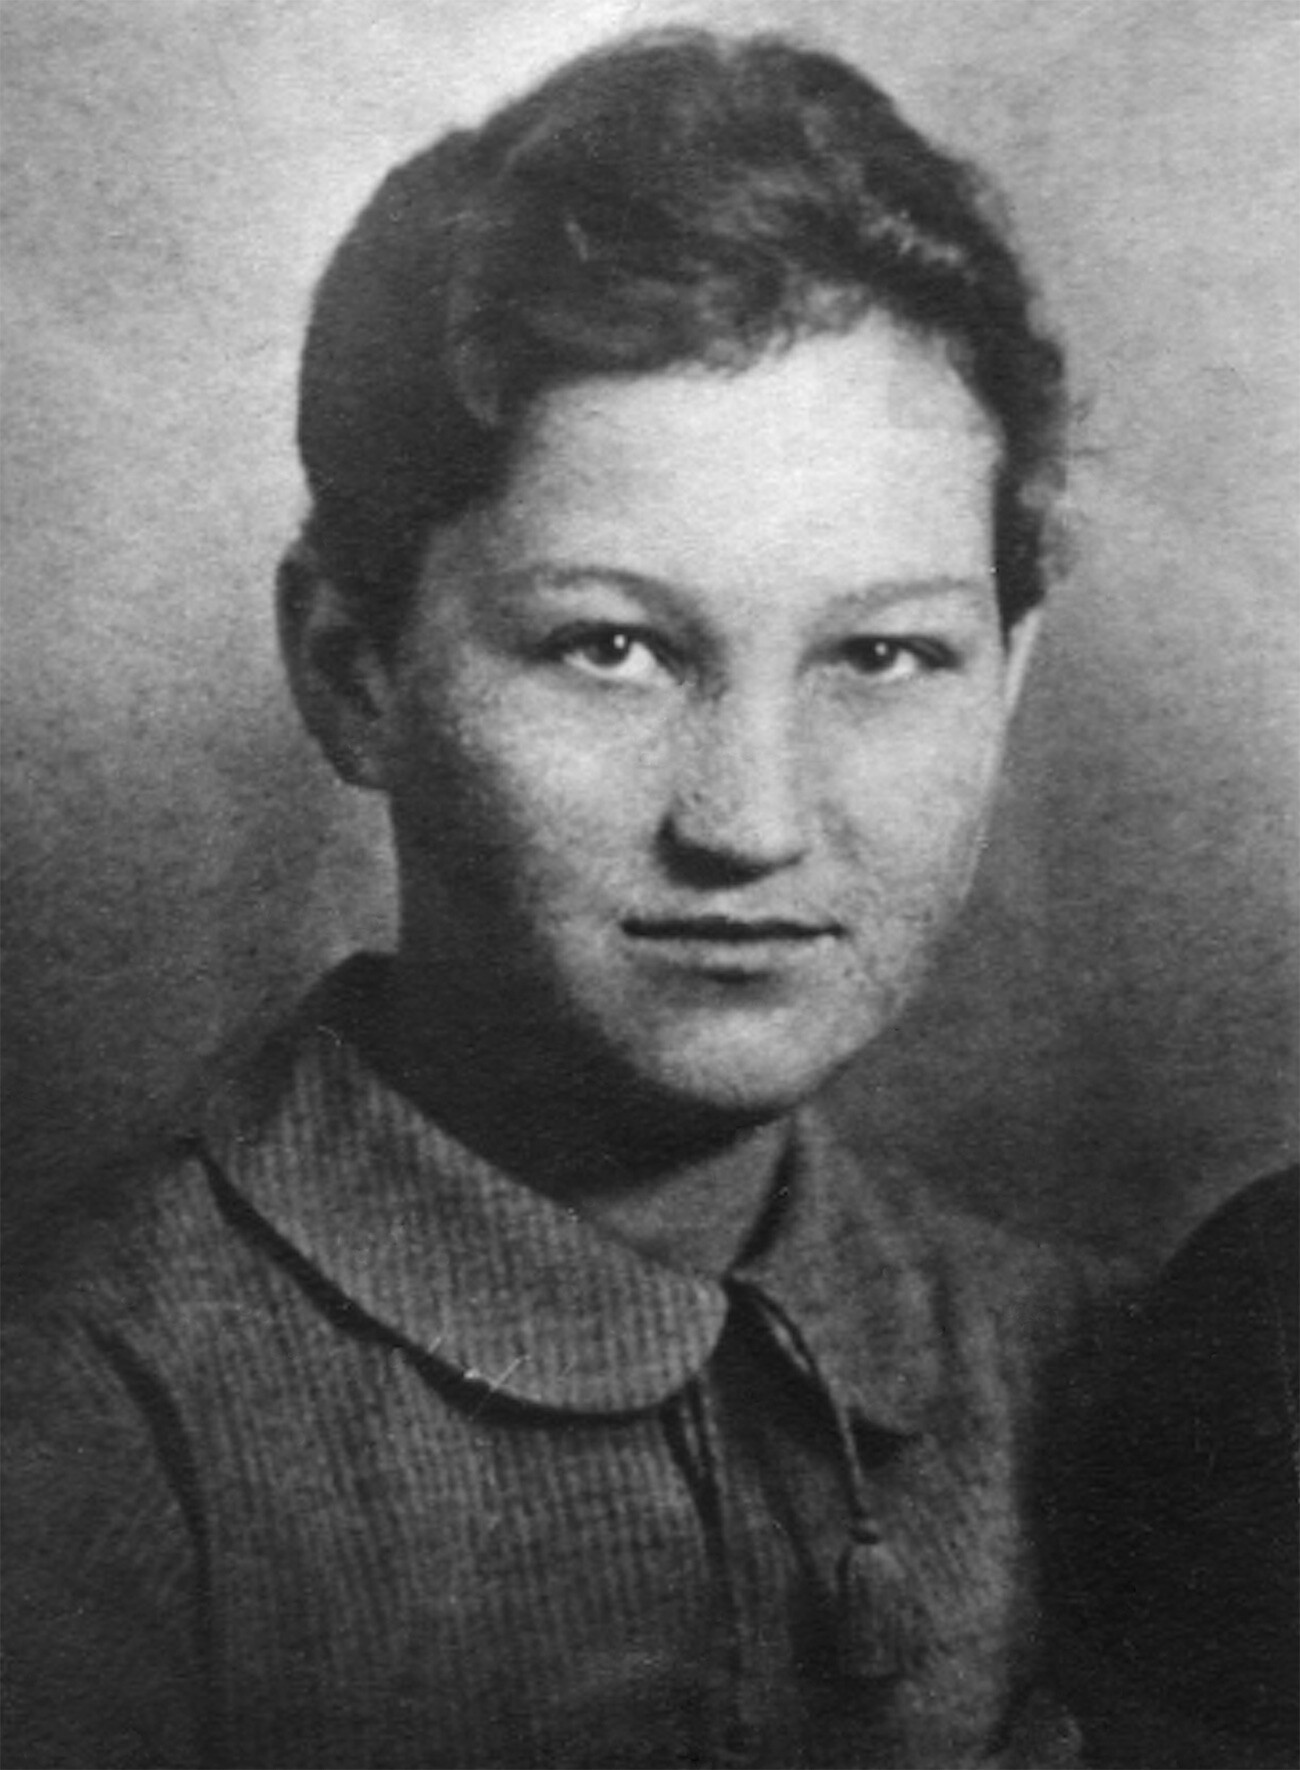 Zoja Kosmodemjanskaja era nata a Osino-Gaj, villaggio della Regione di Tambov. Anche suo fratello minore, Aleksandr Kosmodemjanskij (1925-1945) morì in guerra ed è Eroe dell’Unione Sovietica